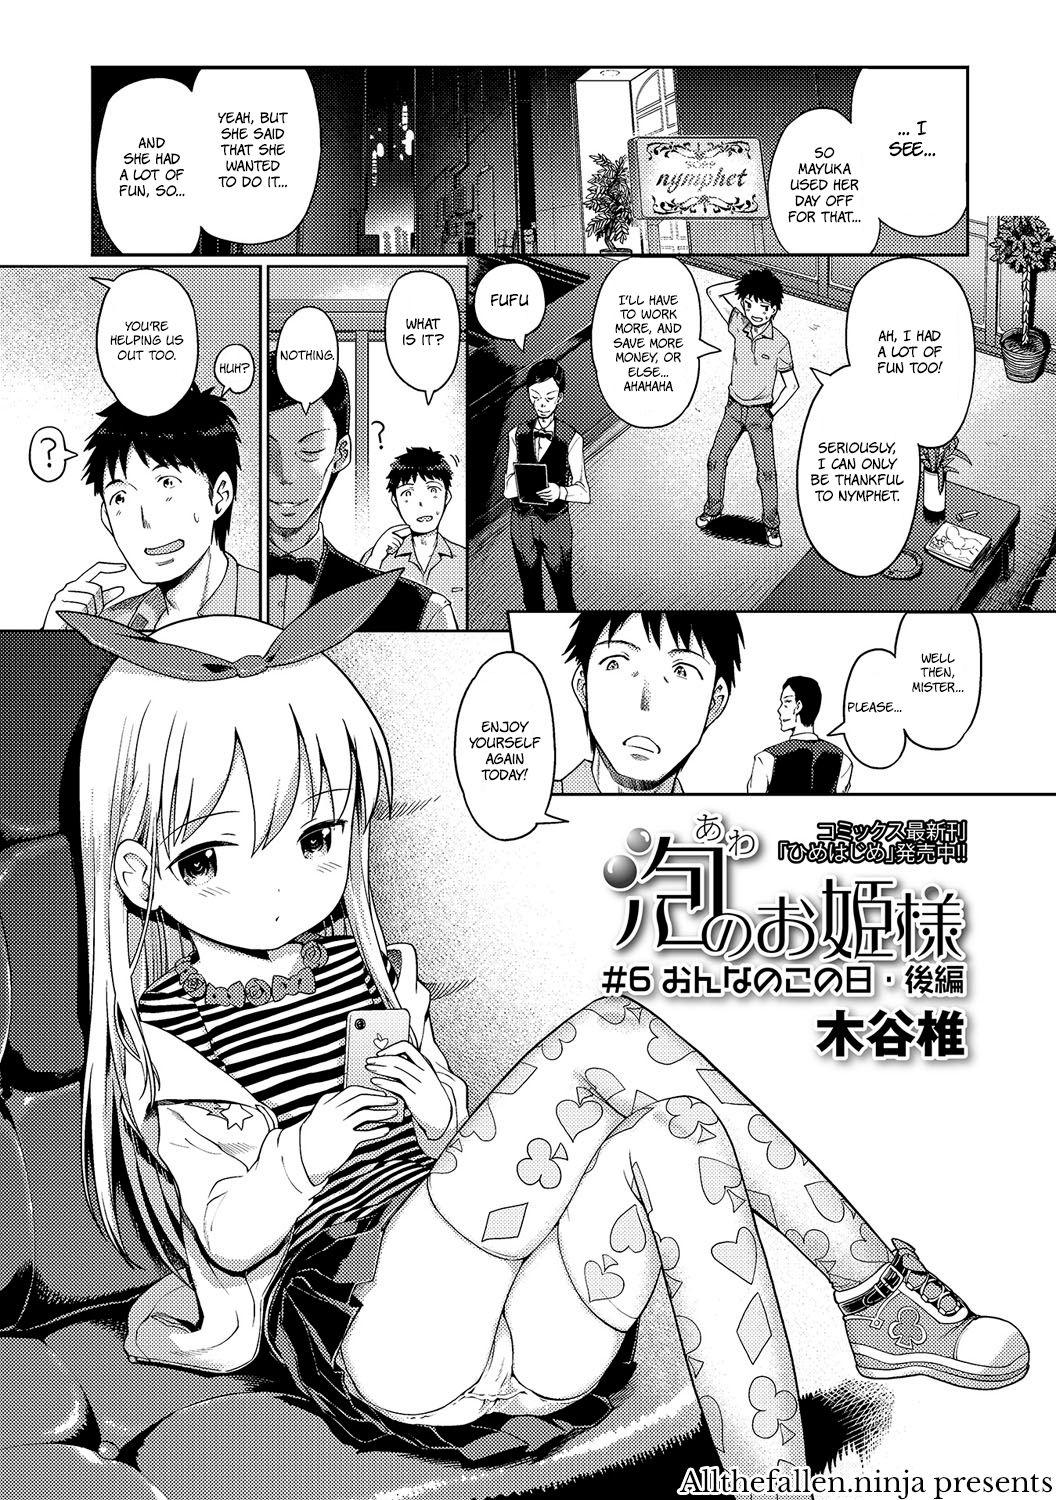 [Kiya Shii] Awa no Ohime-sama #6 Onnanoko no hi - kouhen | Bubble Princess #6 Girl's day - sequel (Digital Puni Pedo! Vol. 06) [English] [ATF] [Decensored] 0